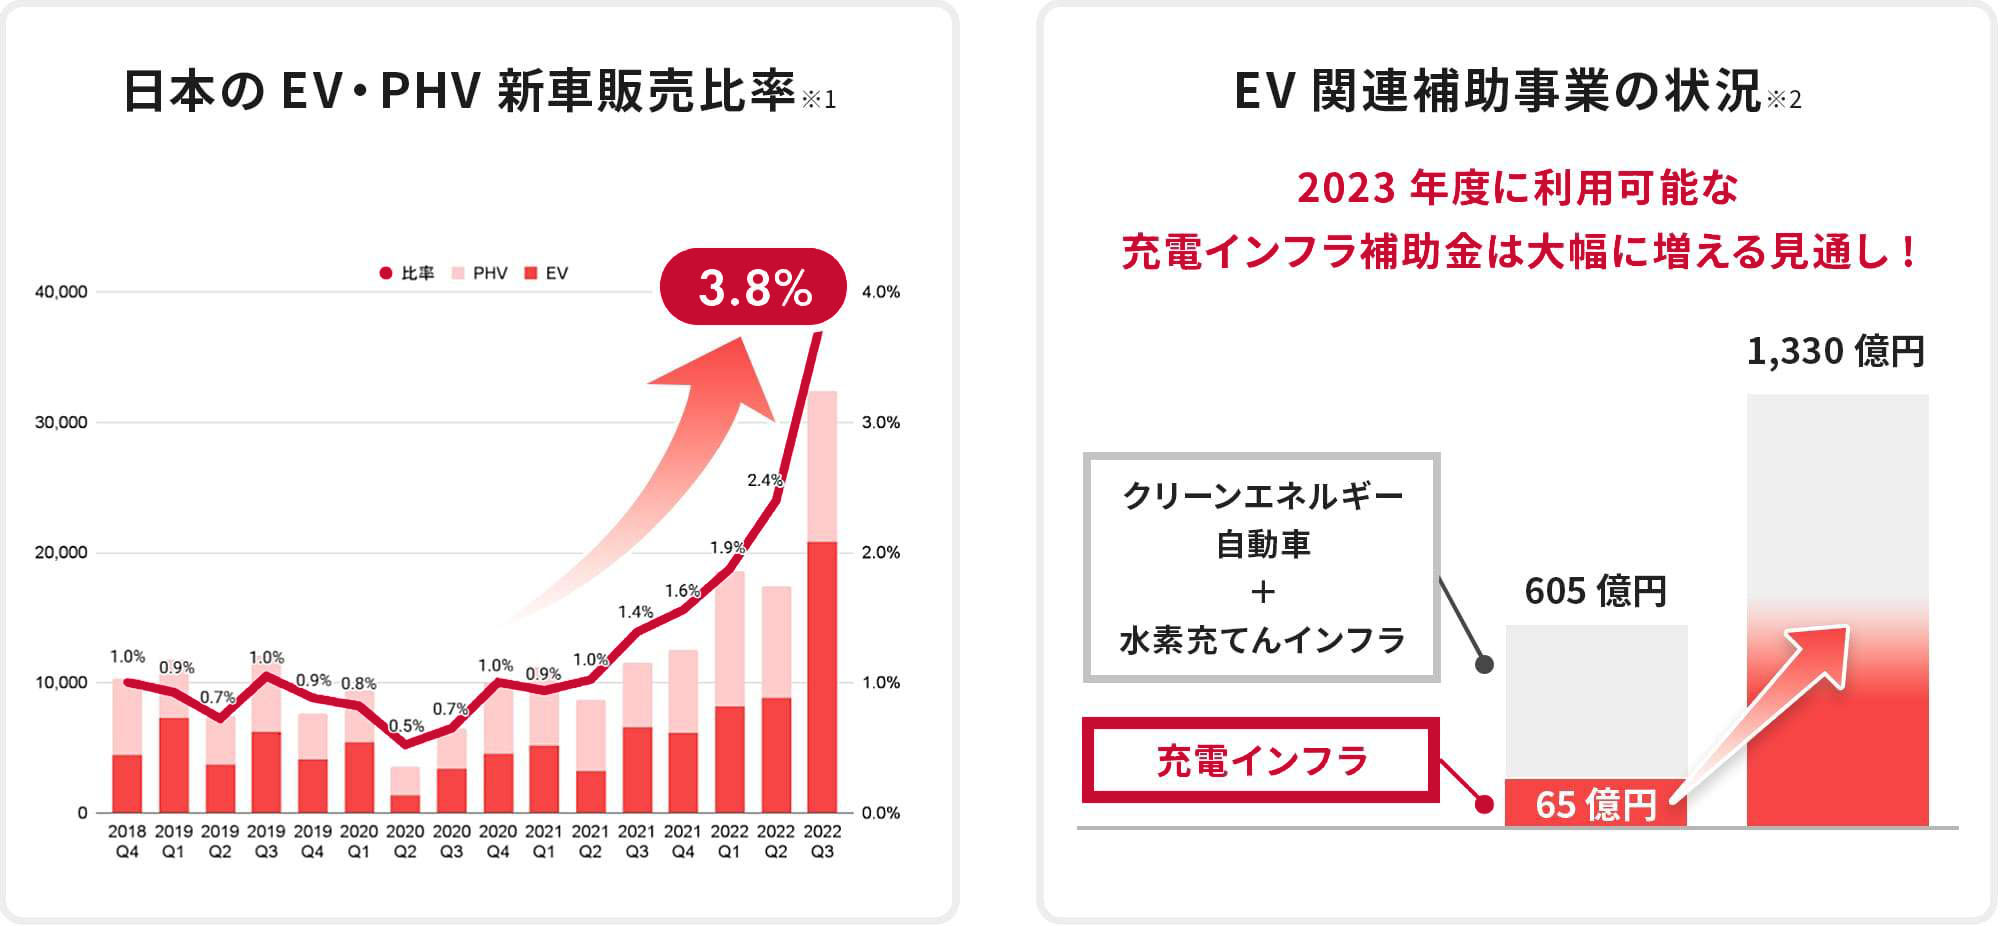 日本のEV・PHV新車販売は過去最高を記録!